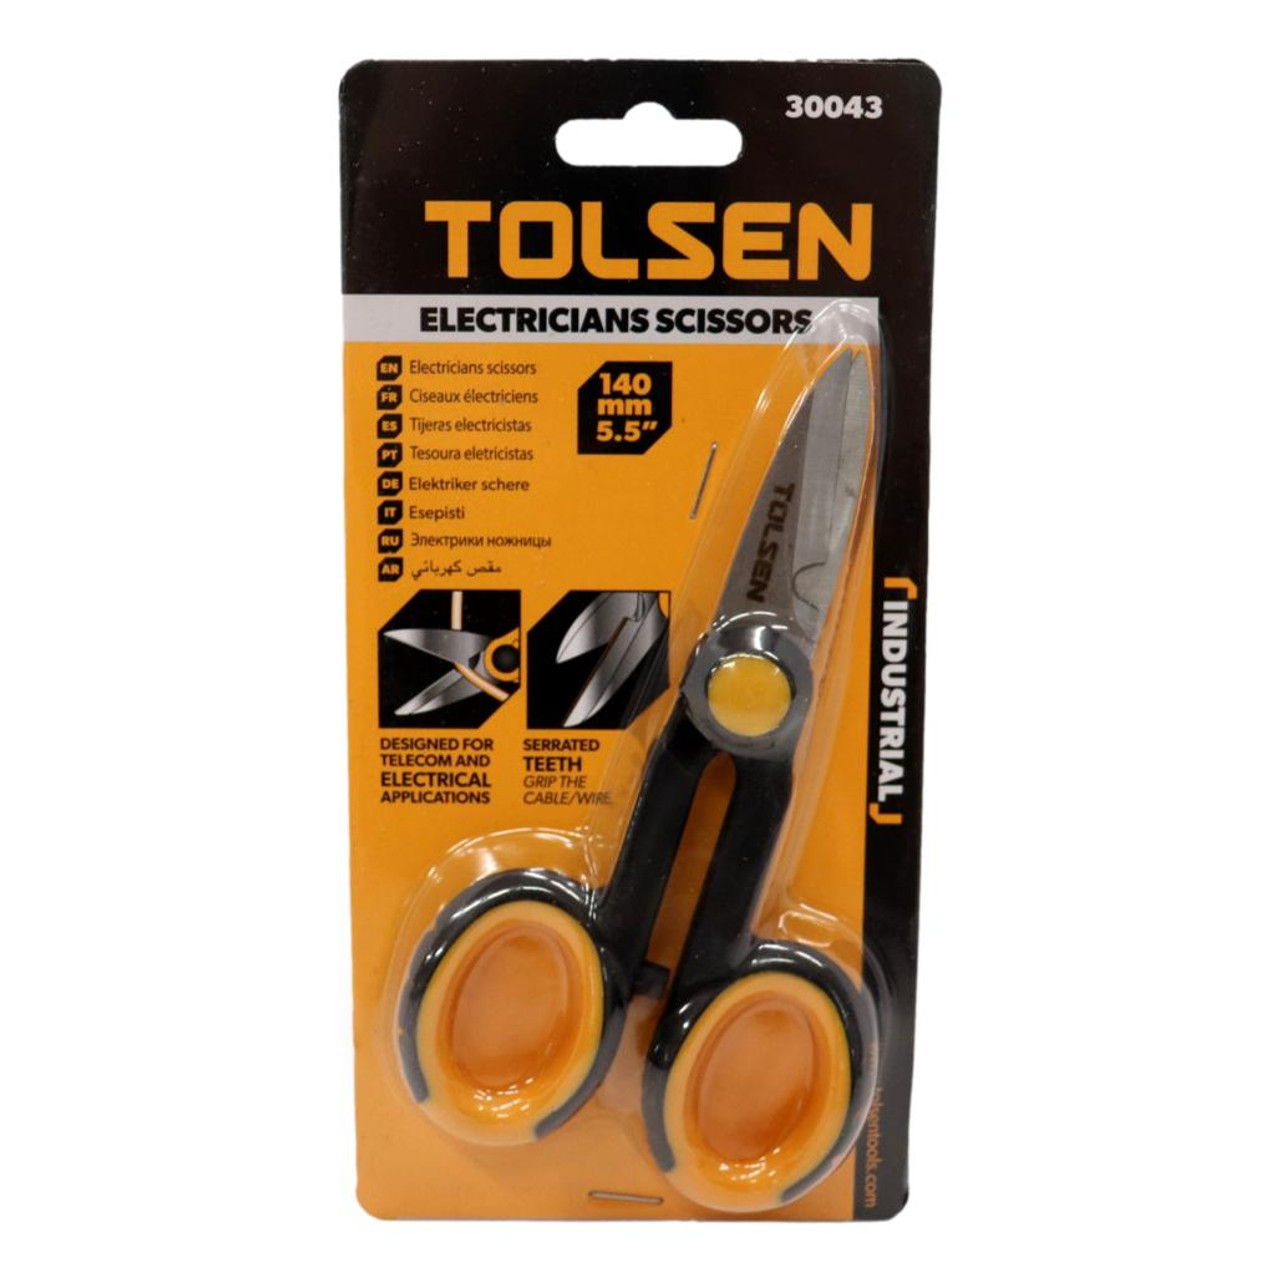 TOLSEN Electrician's Scissors